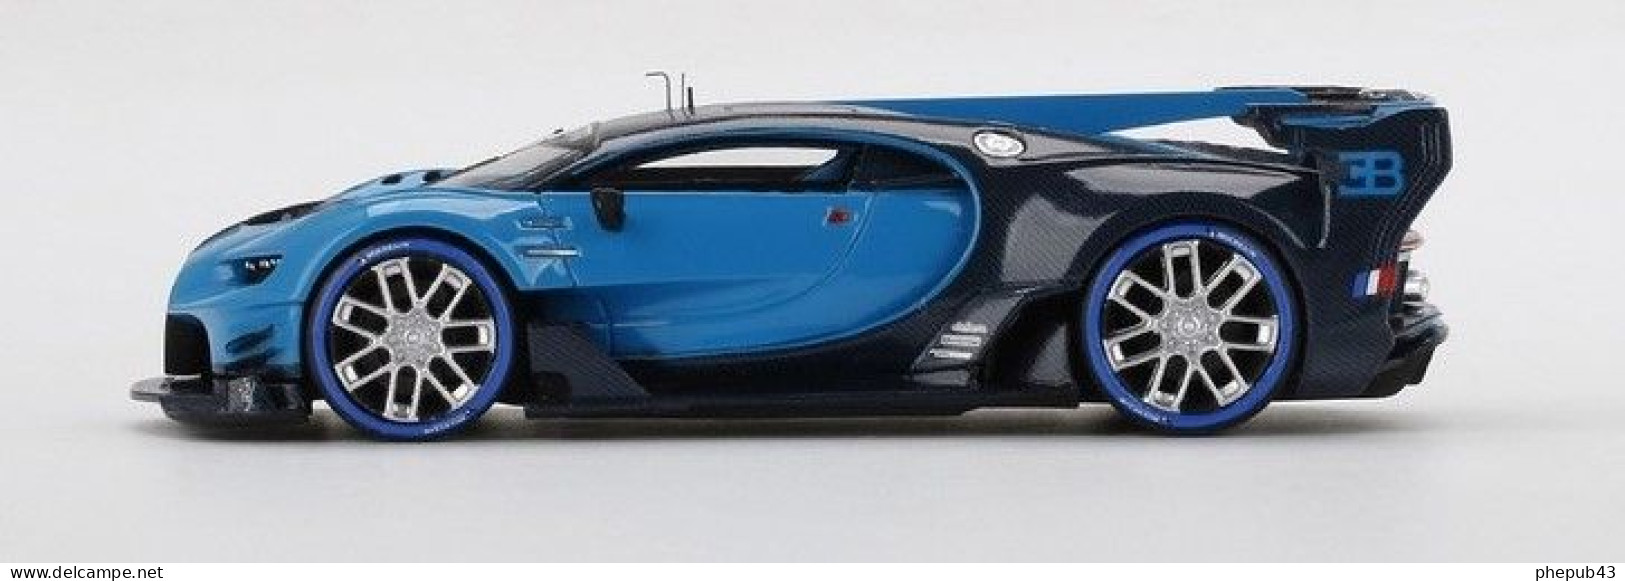 Bugatti Vision Gran Turismo - 2020 - Light Blue & Black - TrueScale - Spark